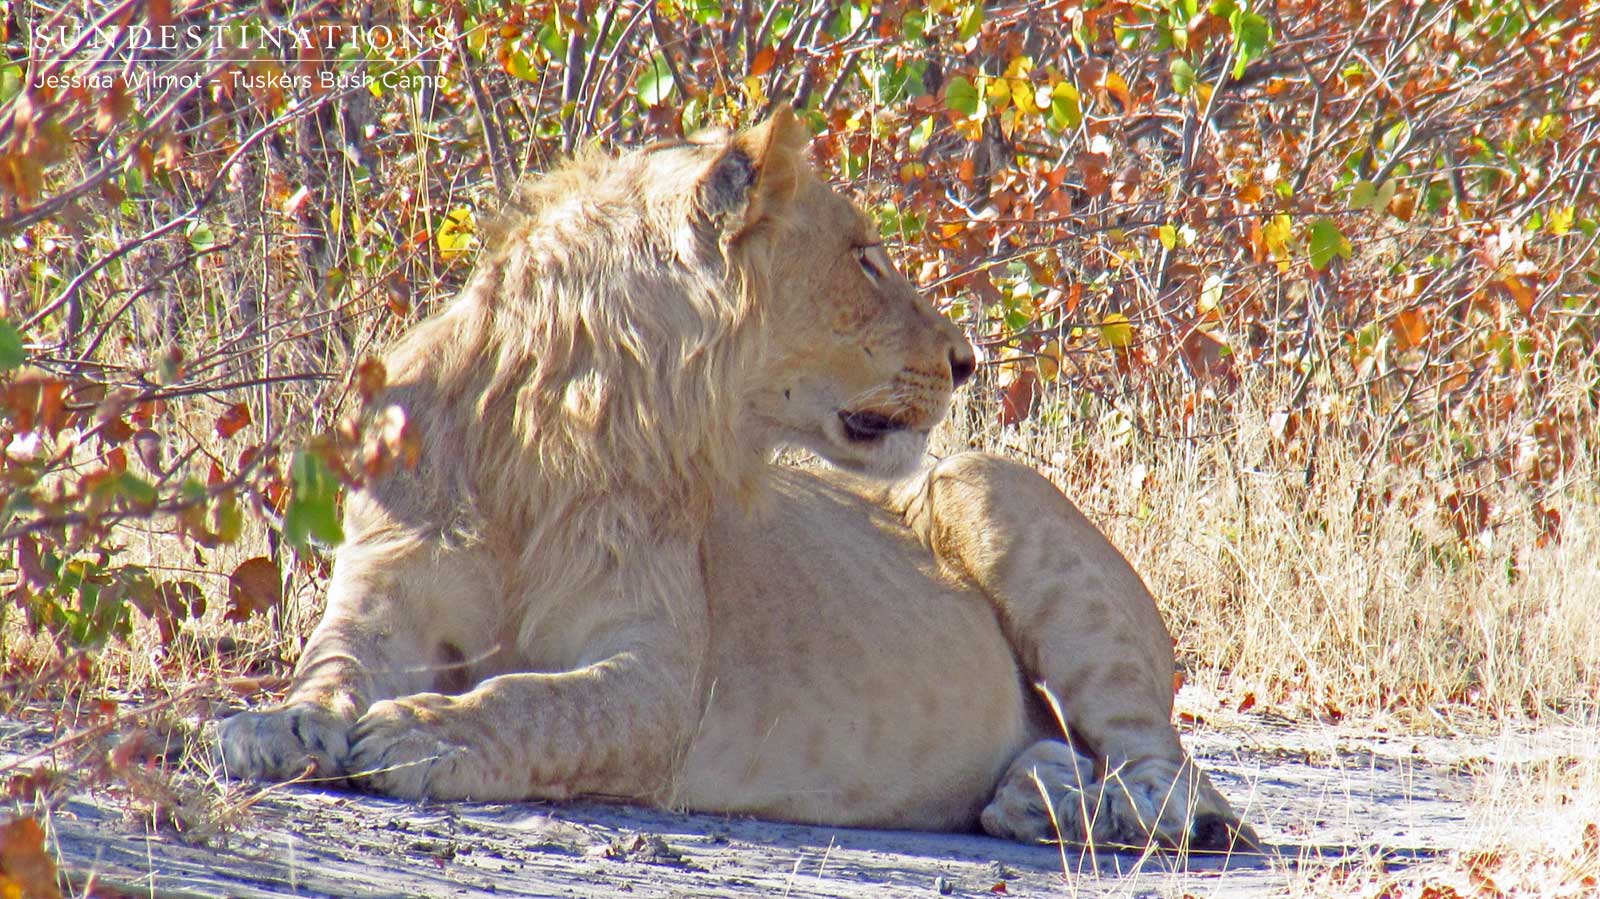 Lion at Tusksers Bush Camp